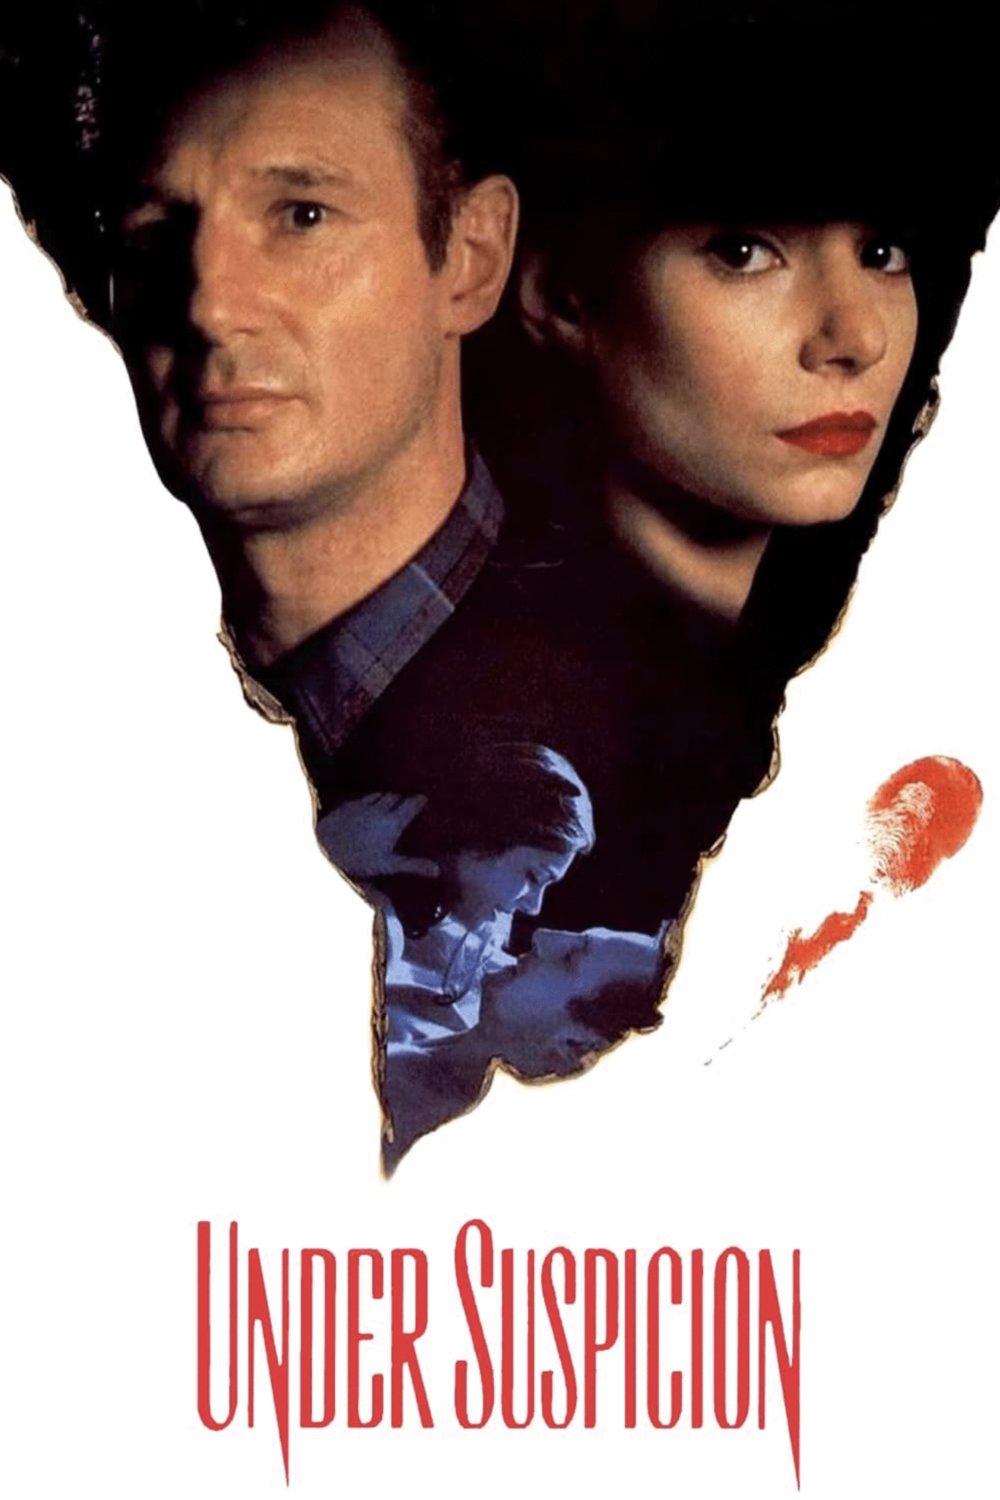 Poster of the movie Under Suspicion